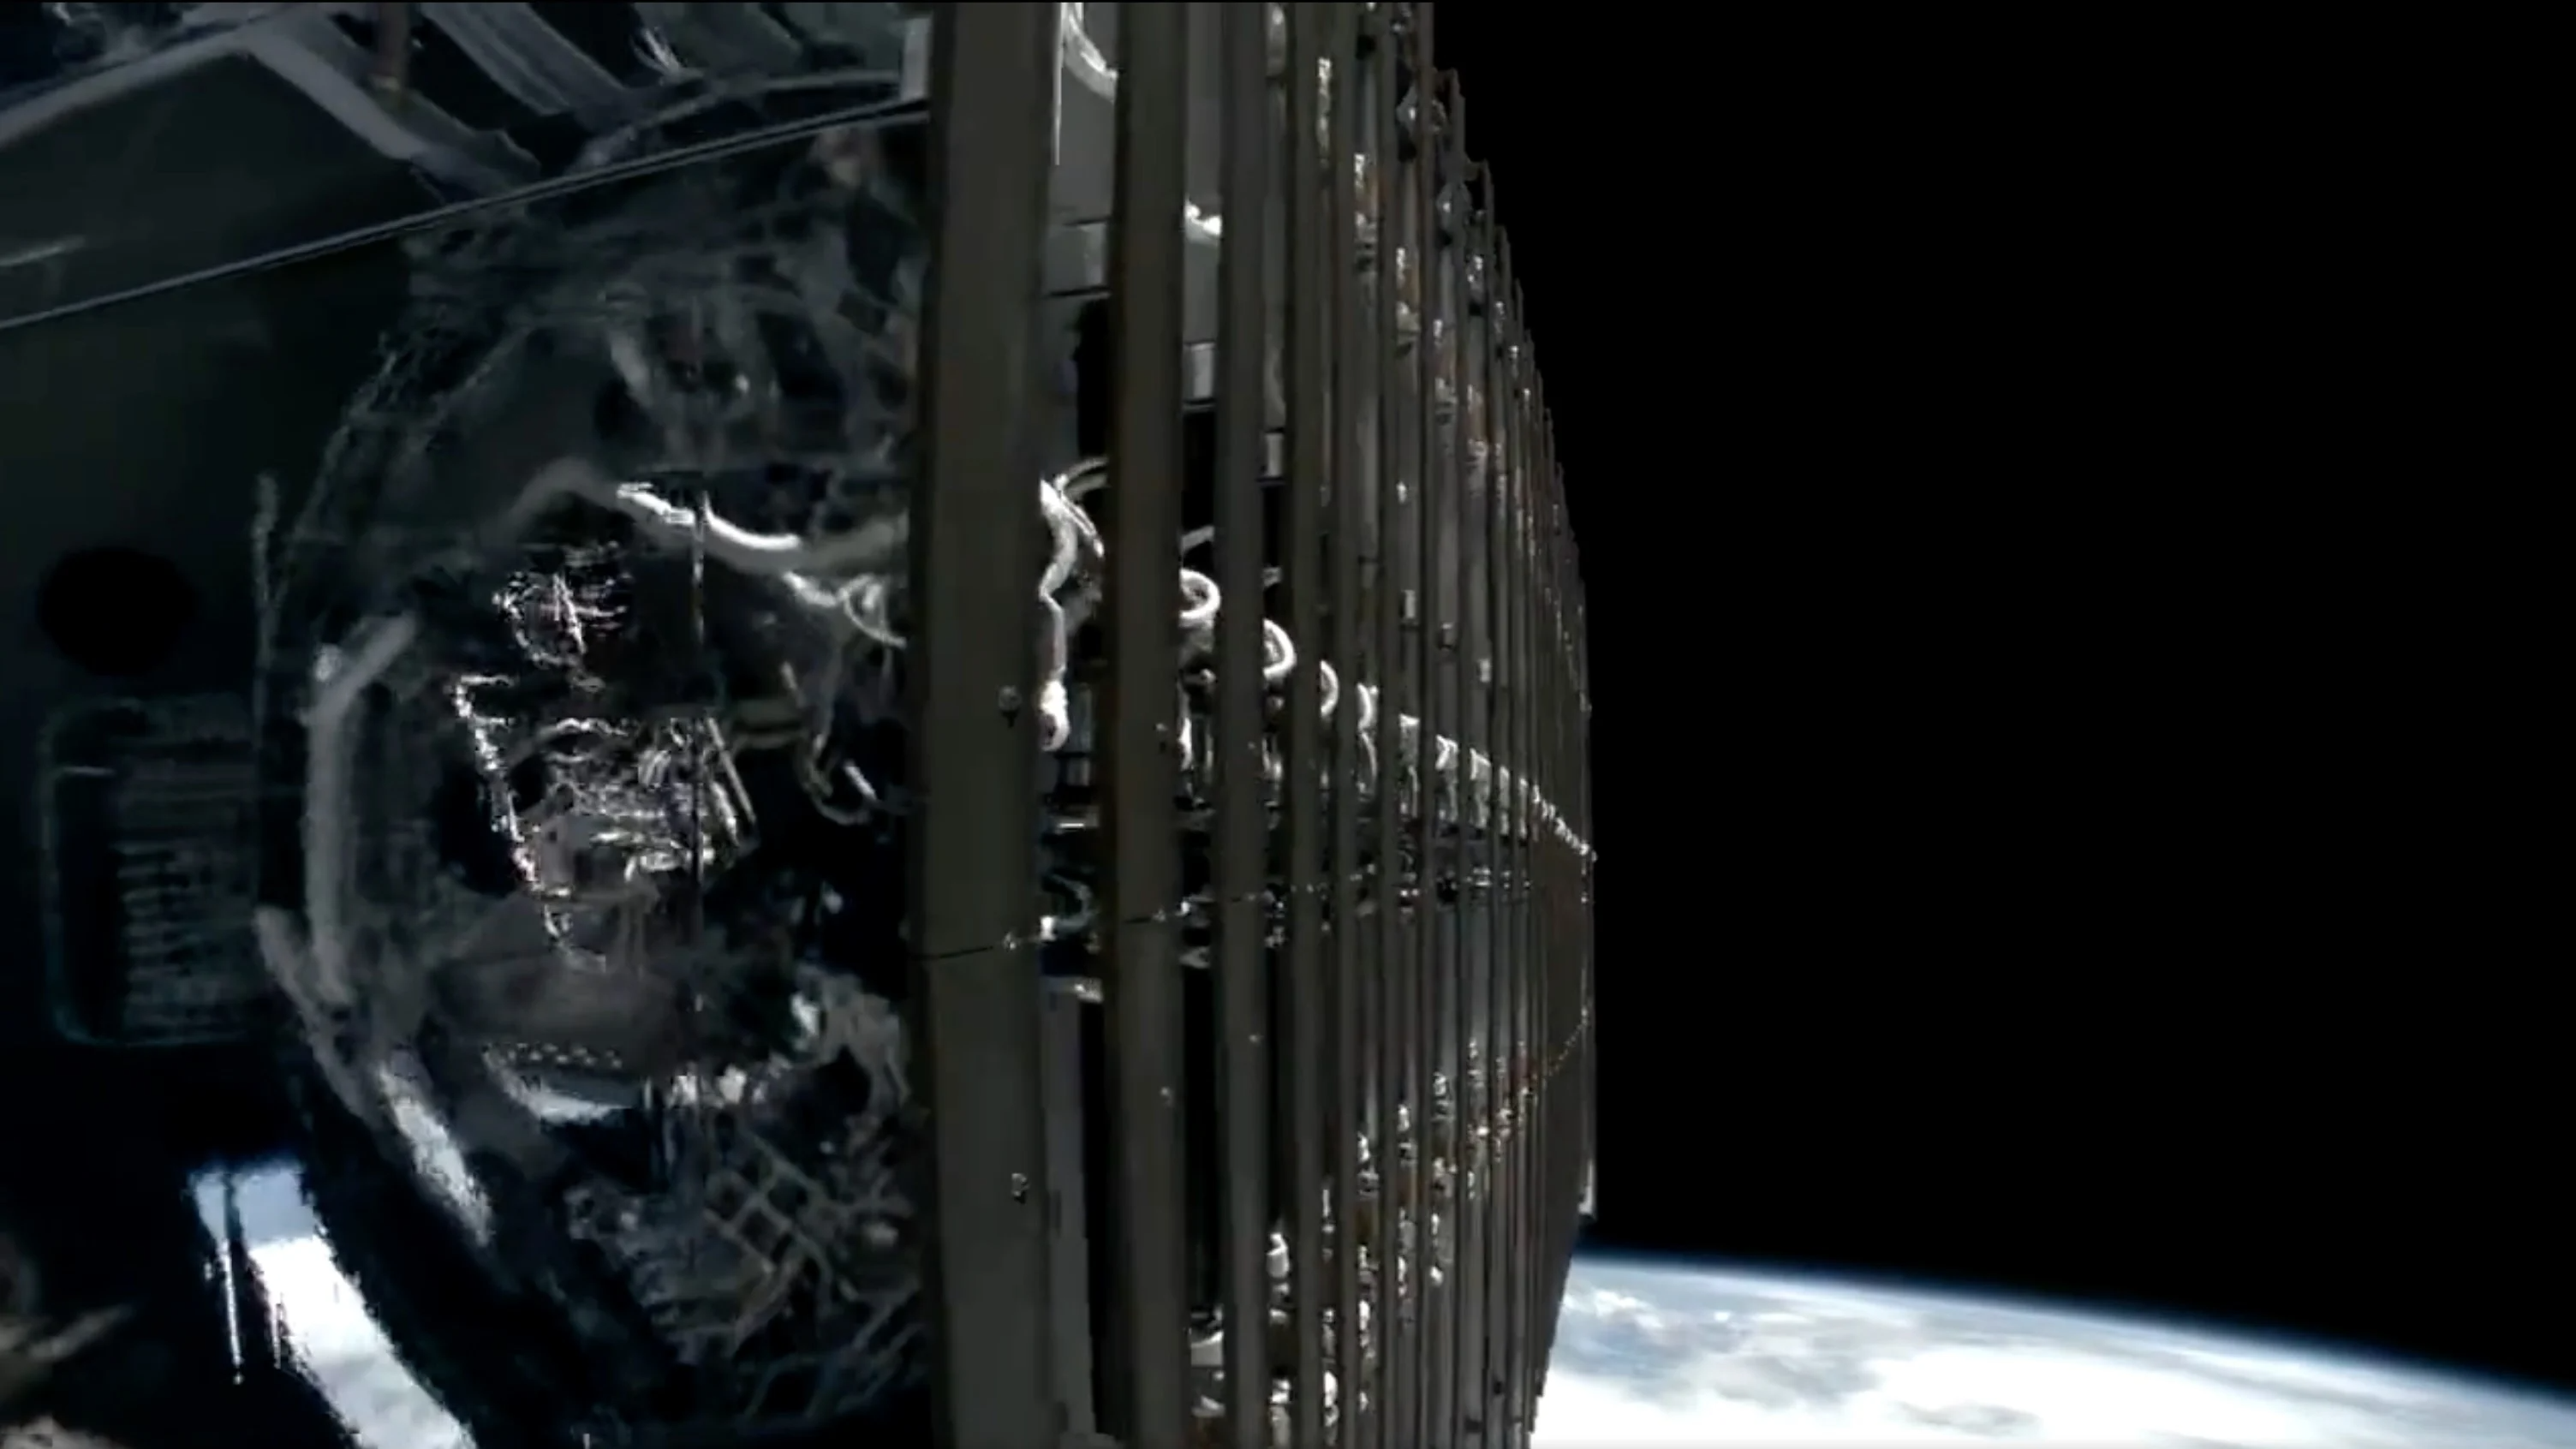 Компания SpaceX продемонстрировала "зеркальную пленку", которая скроет спутники Starlink от астрономов